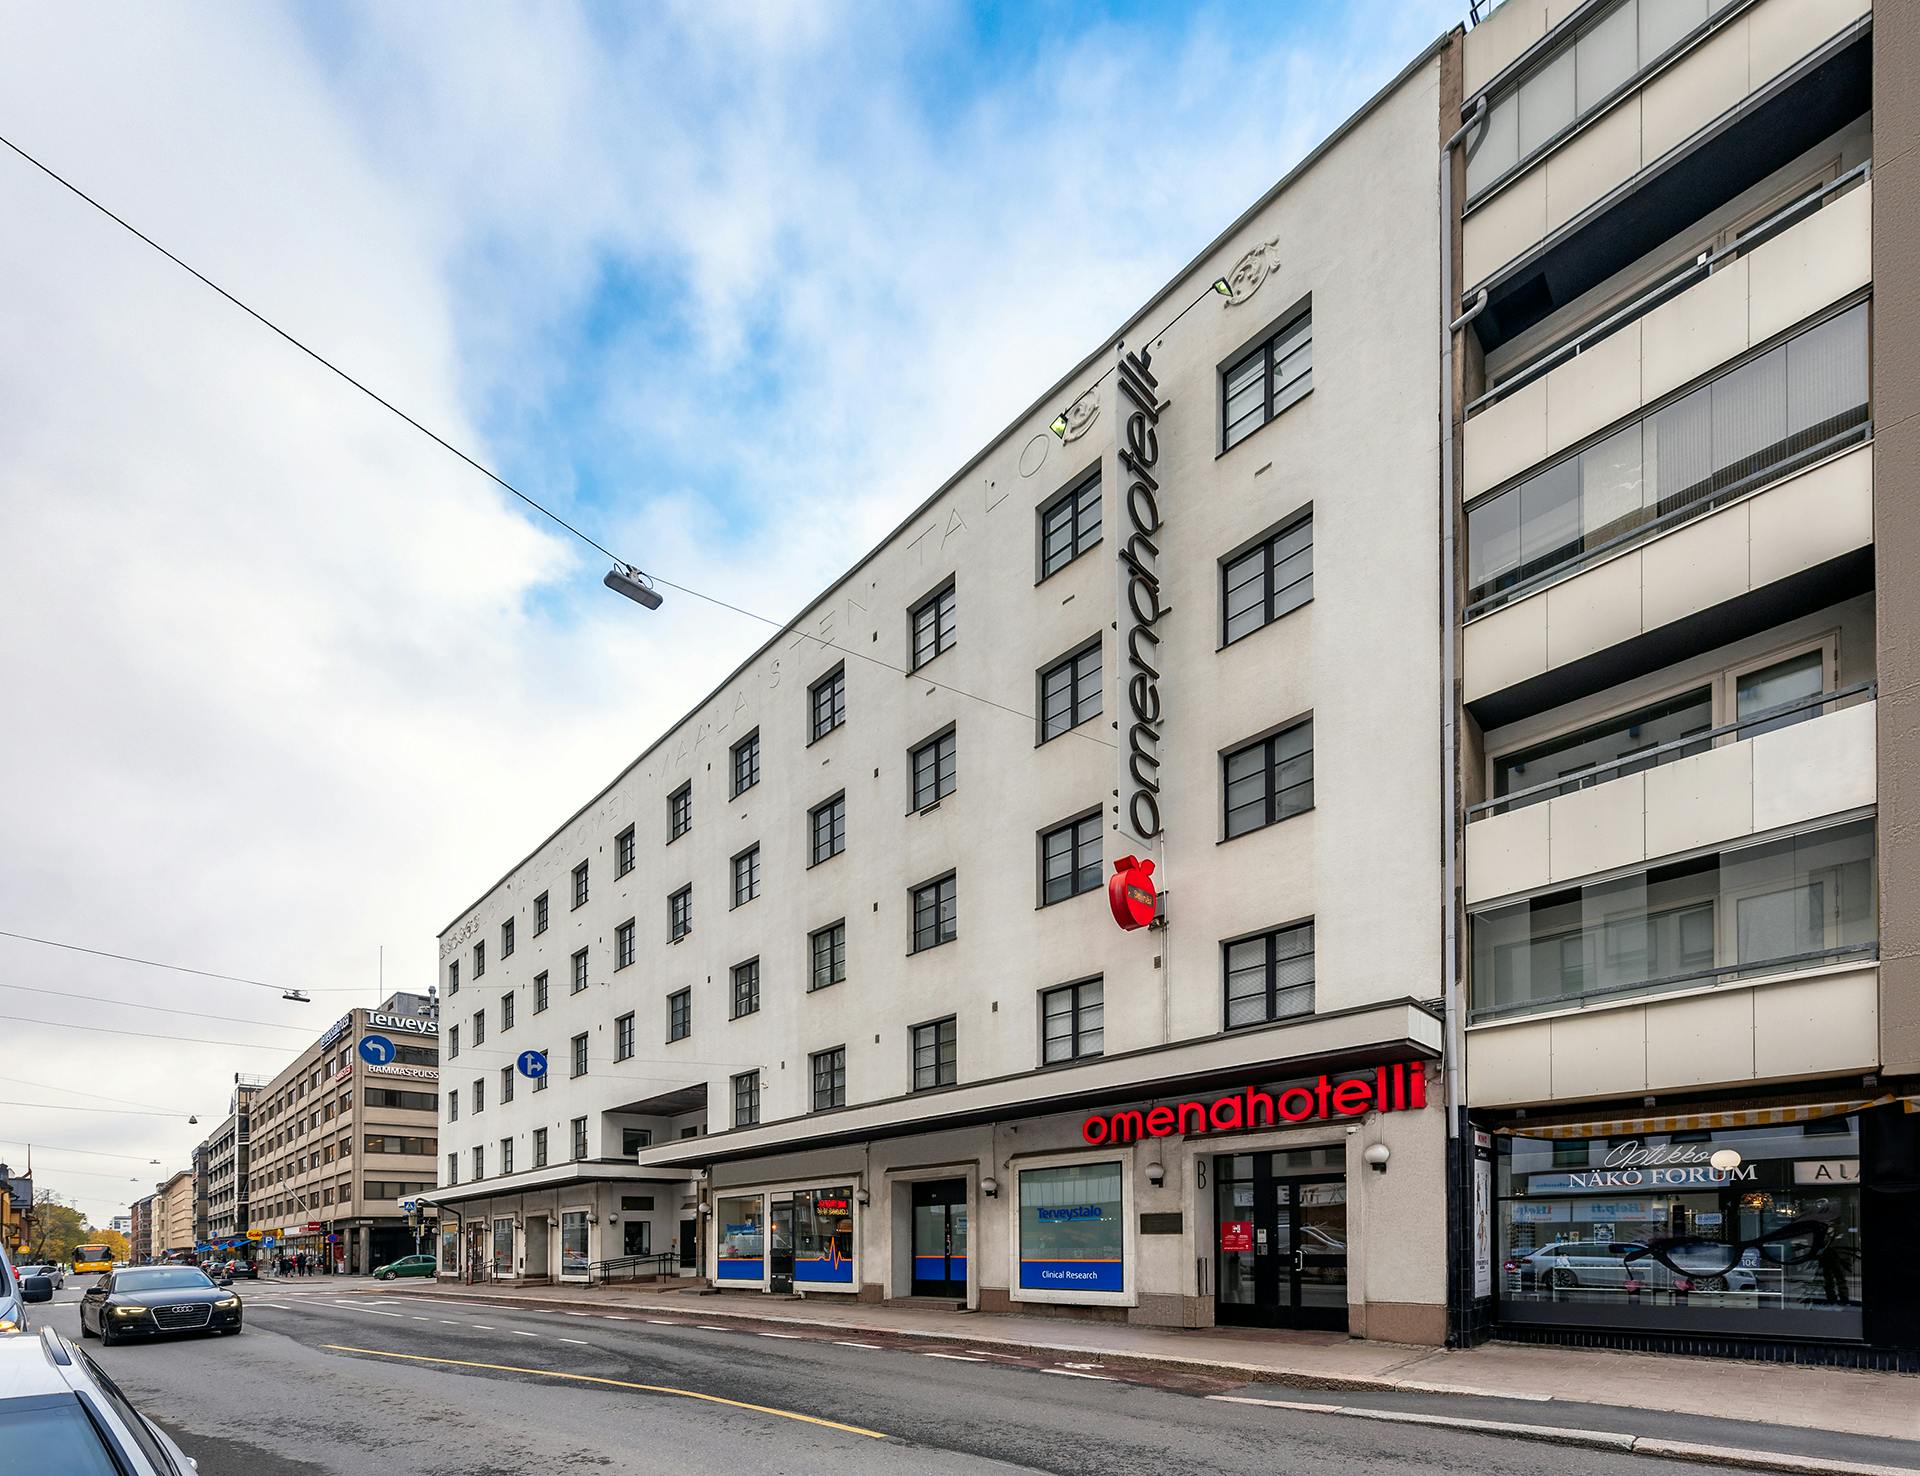 Omena Hotels in Turku: Humalistonkatu